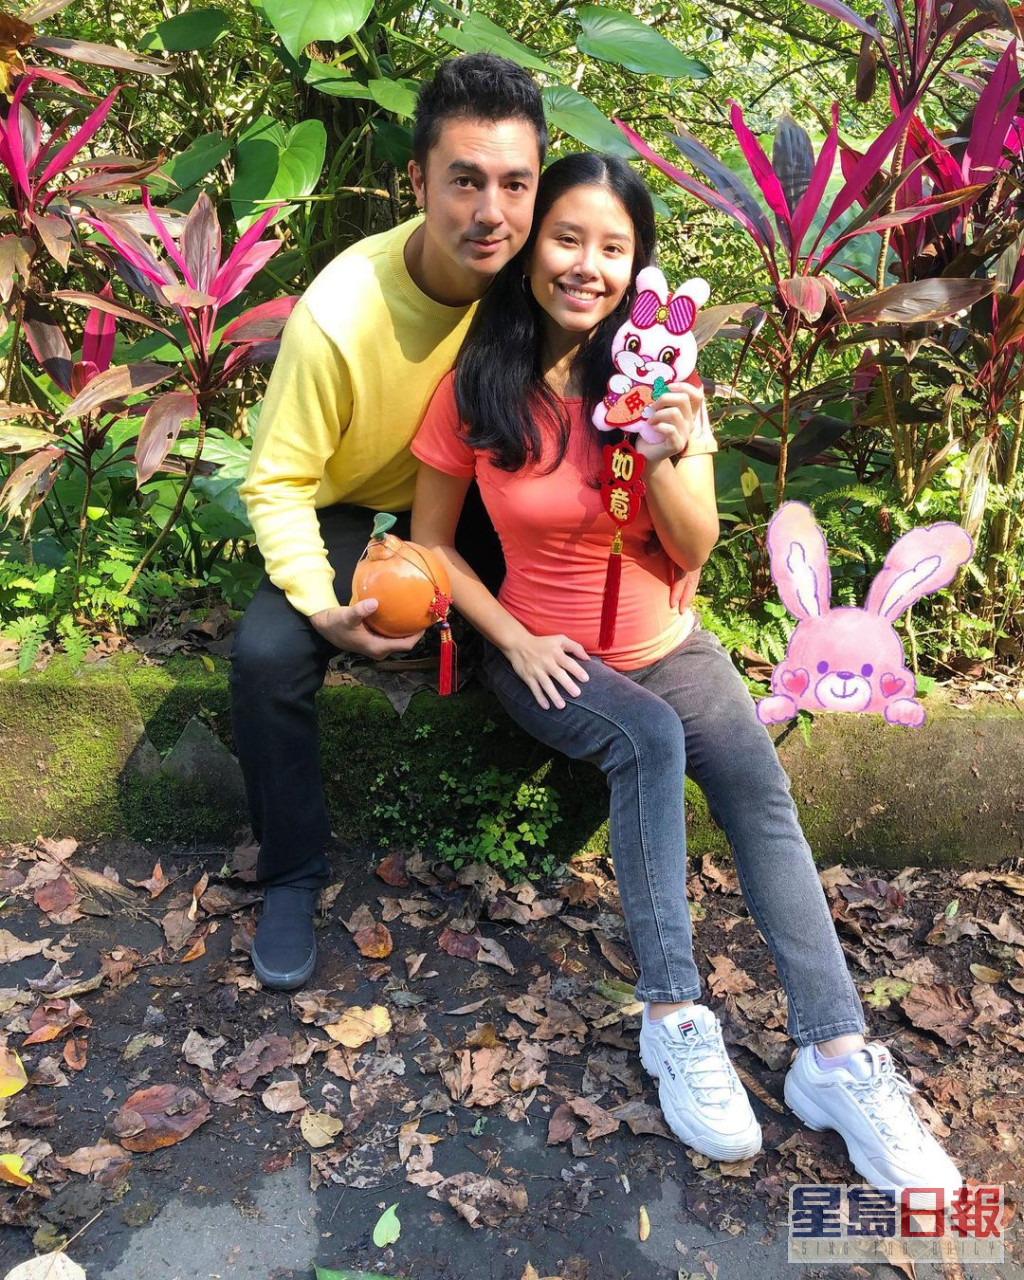 班杰于2019年与拍拖三年的泰籍华裔女友Cindy在台湾登记结婚。